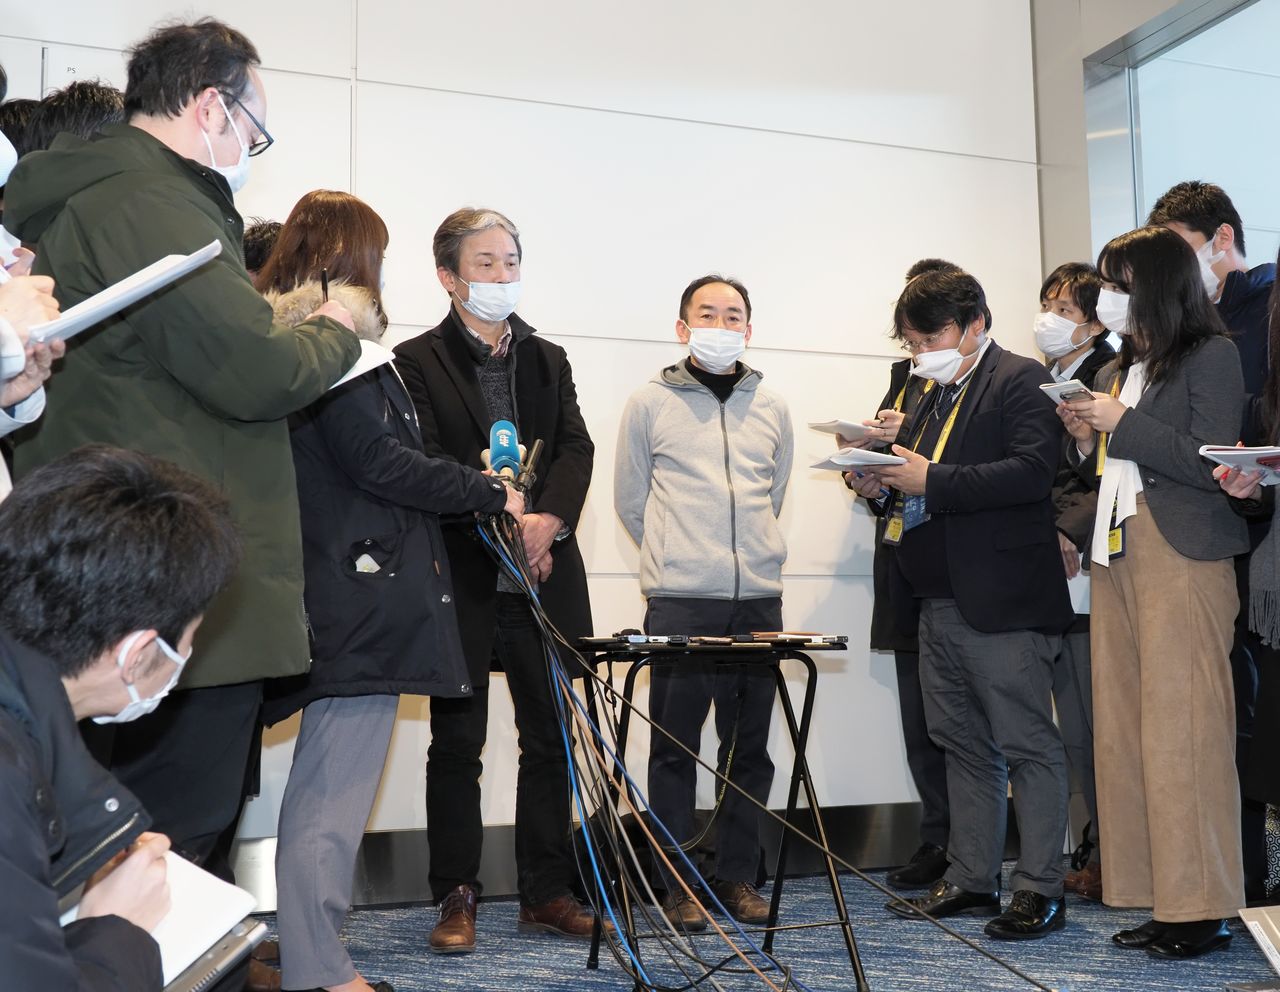 Des ressortissants japonais revenus de Wuhan par avion, interviewés à leur retour à l’aéroport de Haneda, le 29 janvier 2020 (Jiji press)